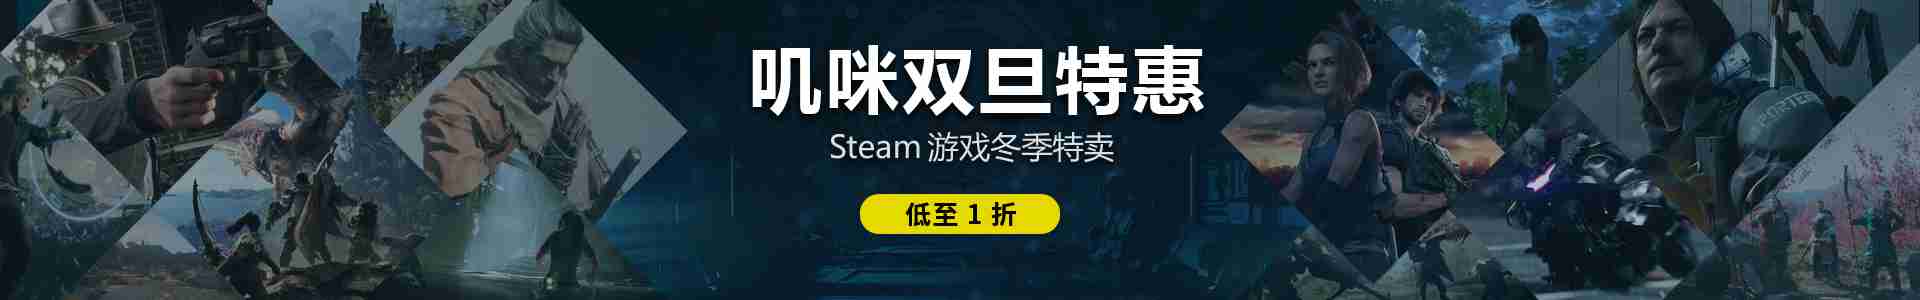 叽咪叽咪 | Gimmgimm - steam游戏评测资讯平台